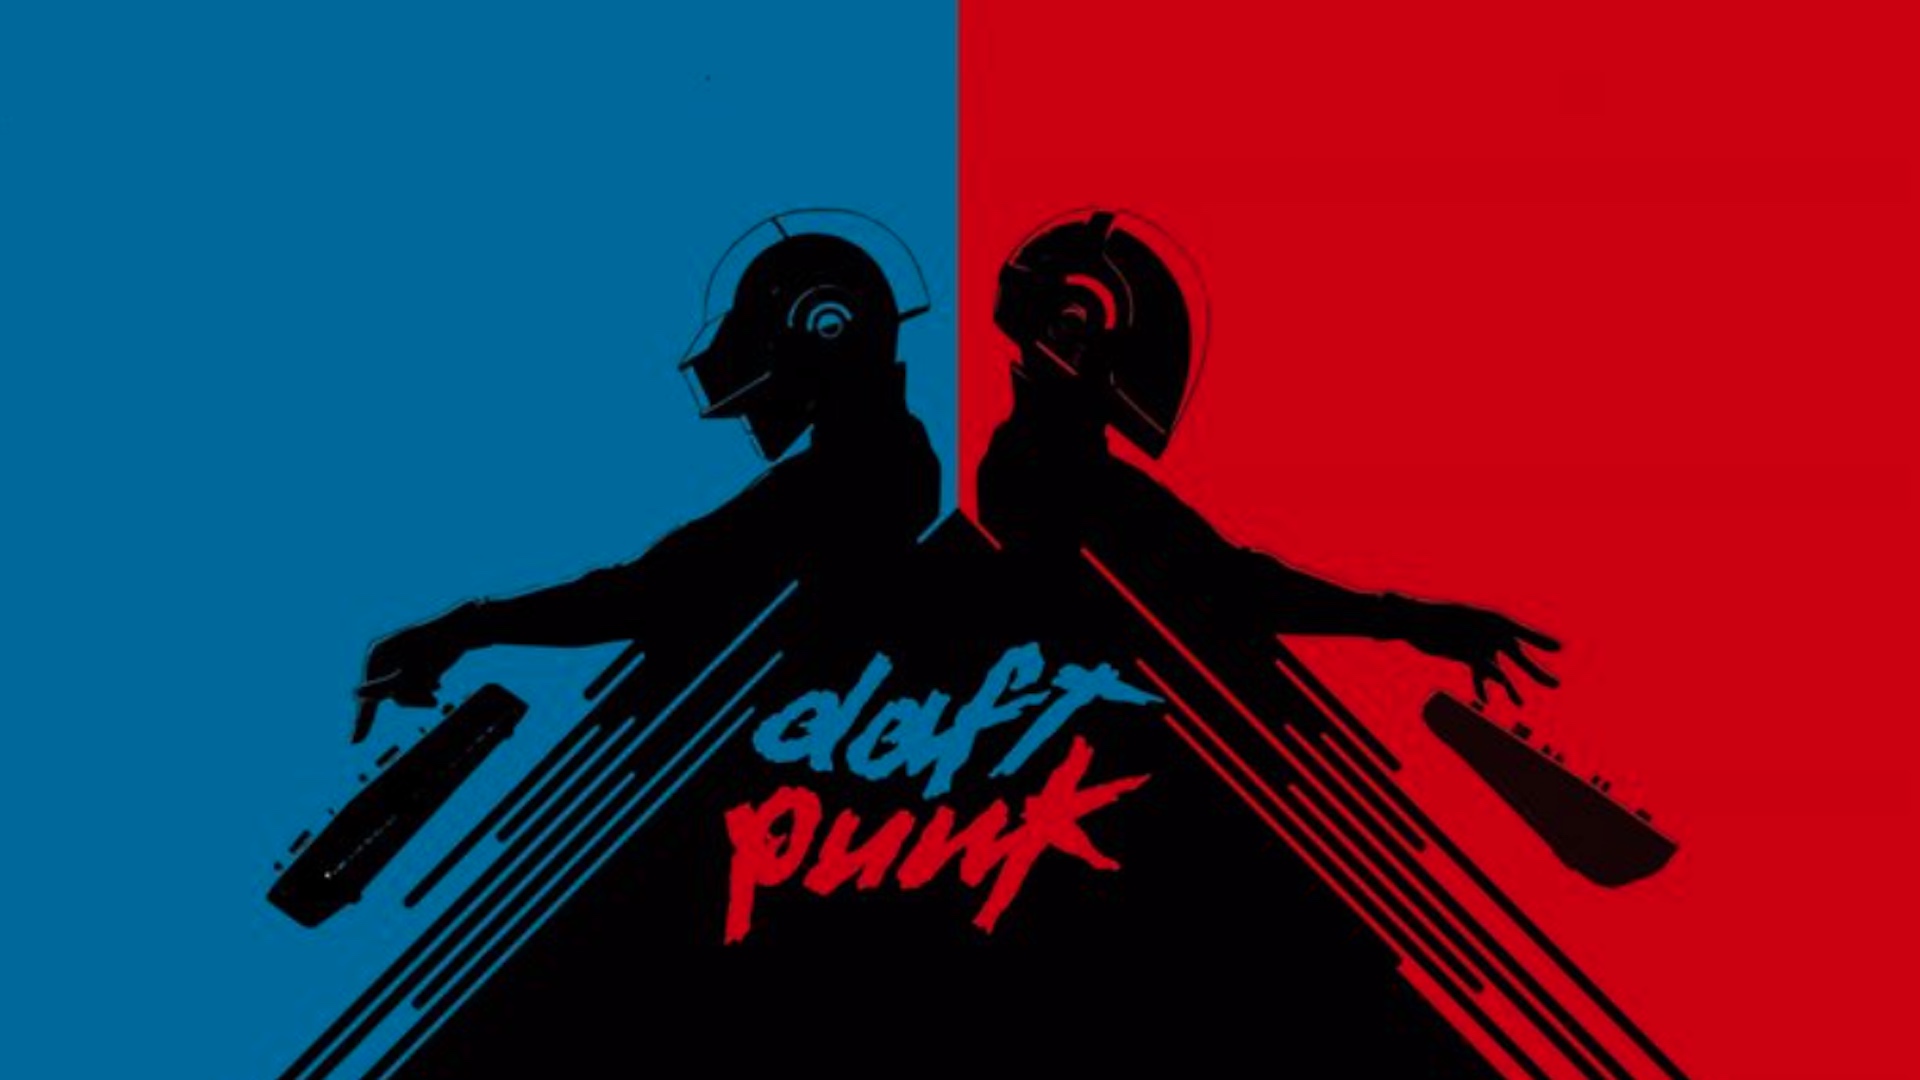 Saldrá un nuevo libro sobre Daft Punk